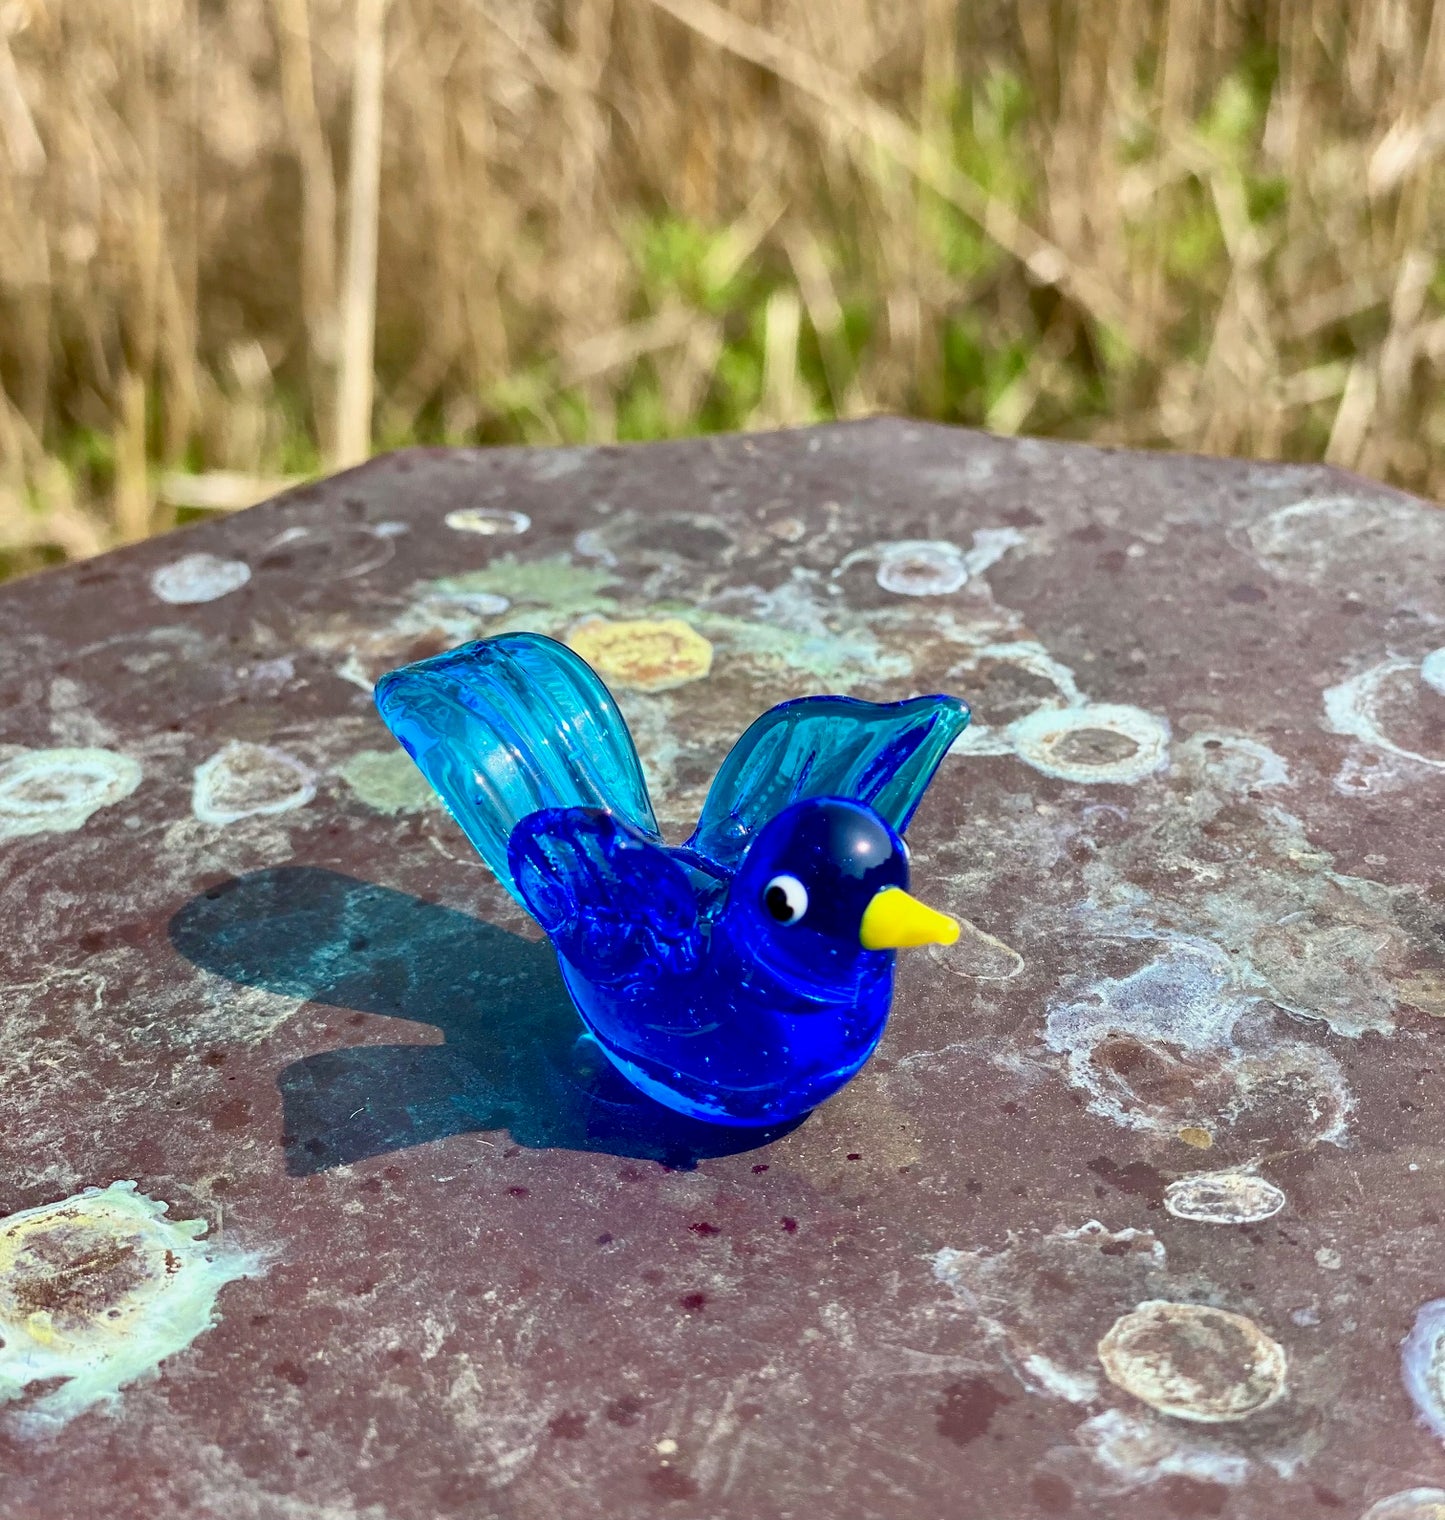 Glass Figurine Sitter Collectible - BLUE BIRD